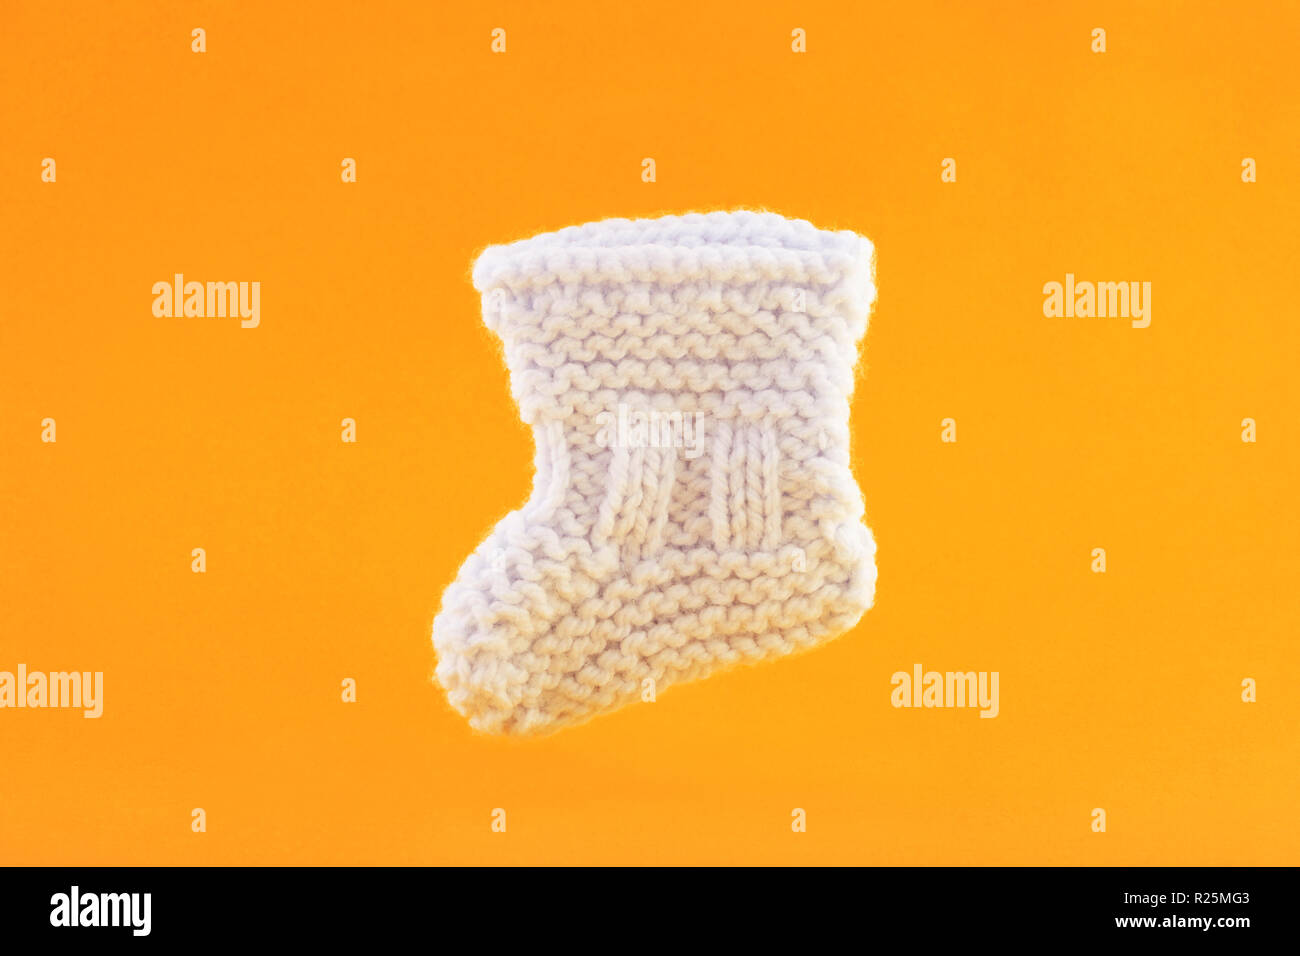 White baby sock on orange background Stock Photo